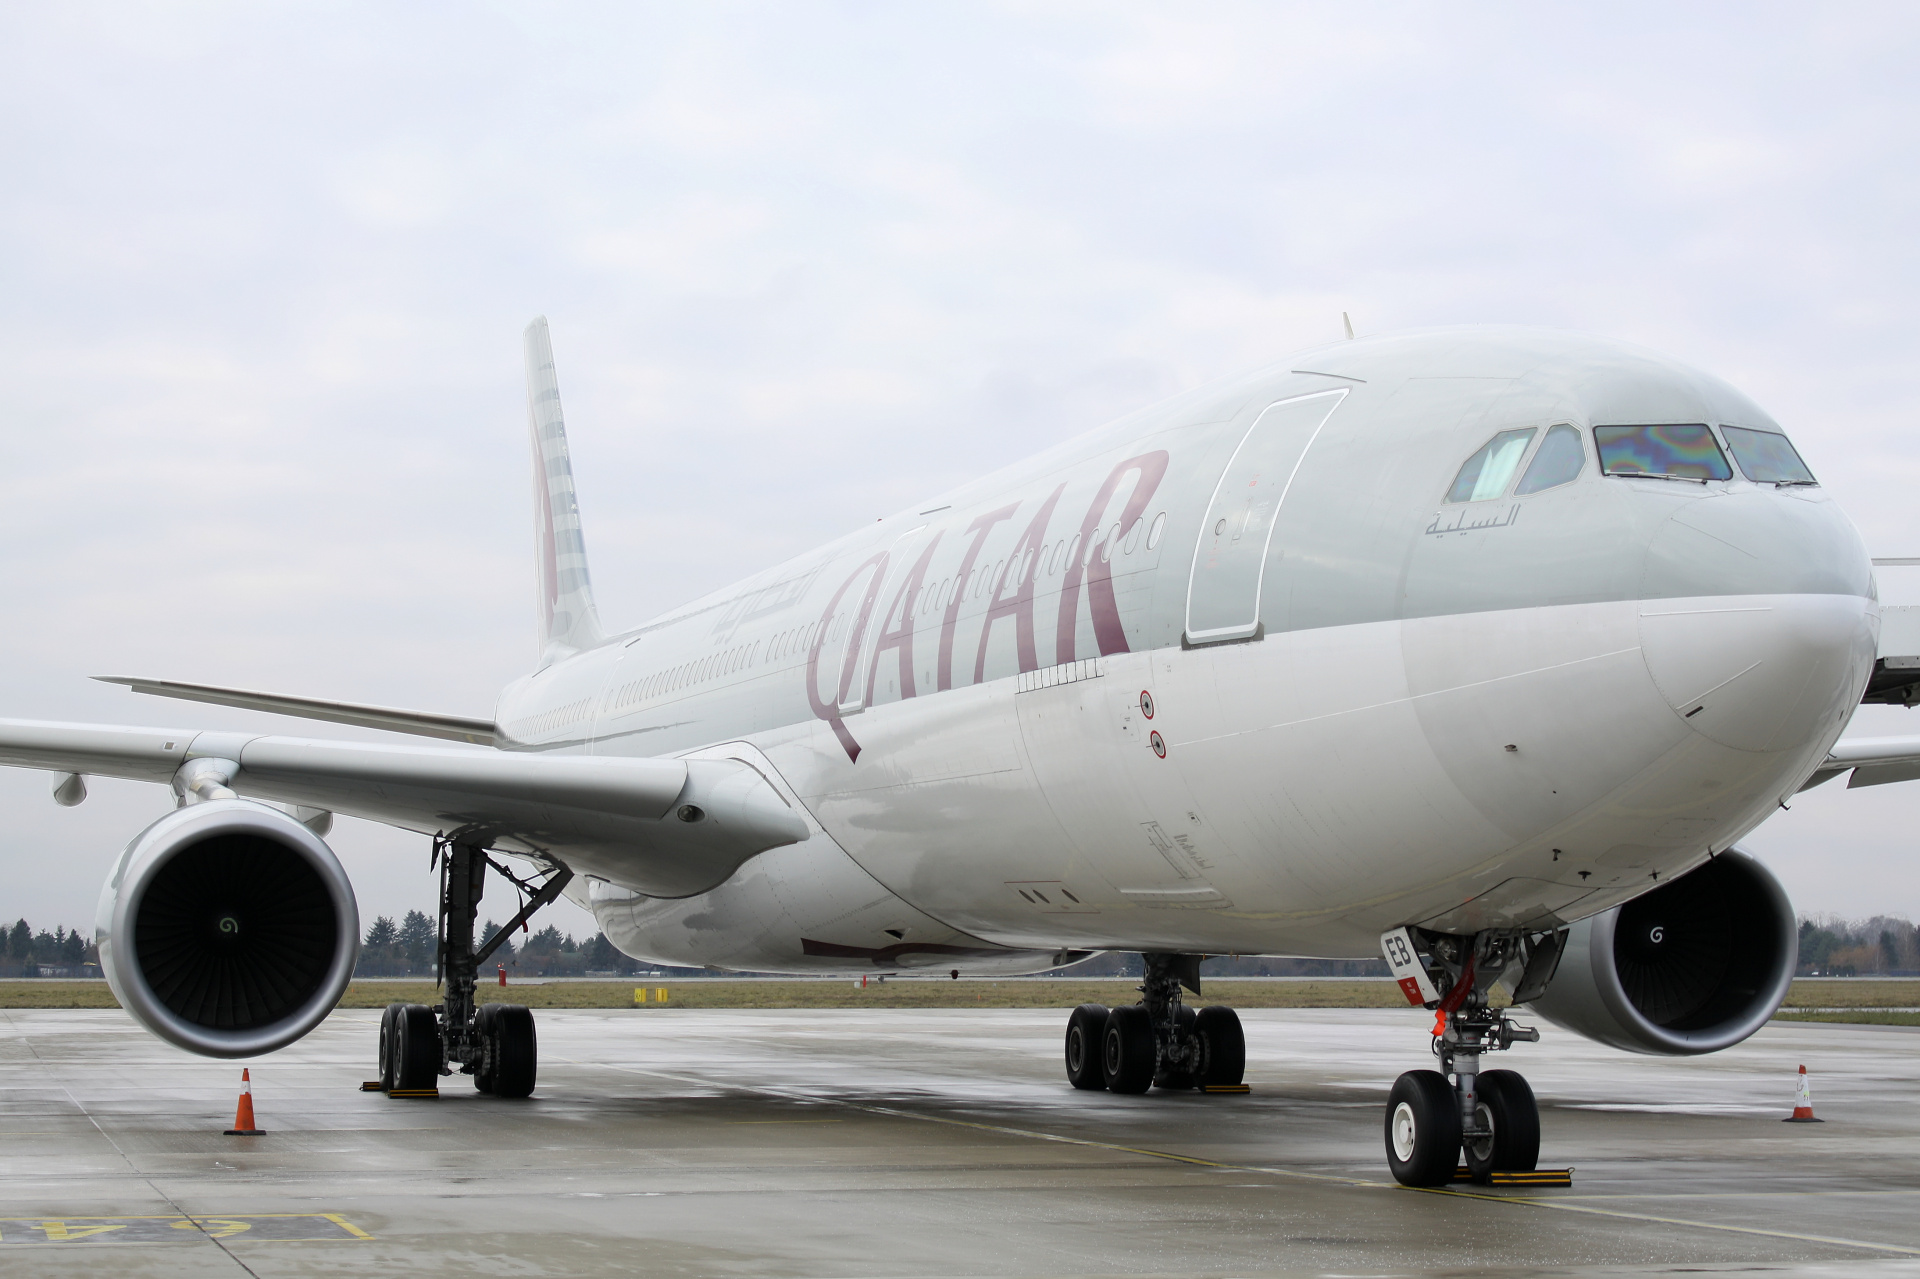 A7-AEB (Aircraft » EPWA Spotting » Airbus A330-300 » Qatar Airways)